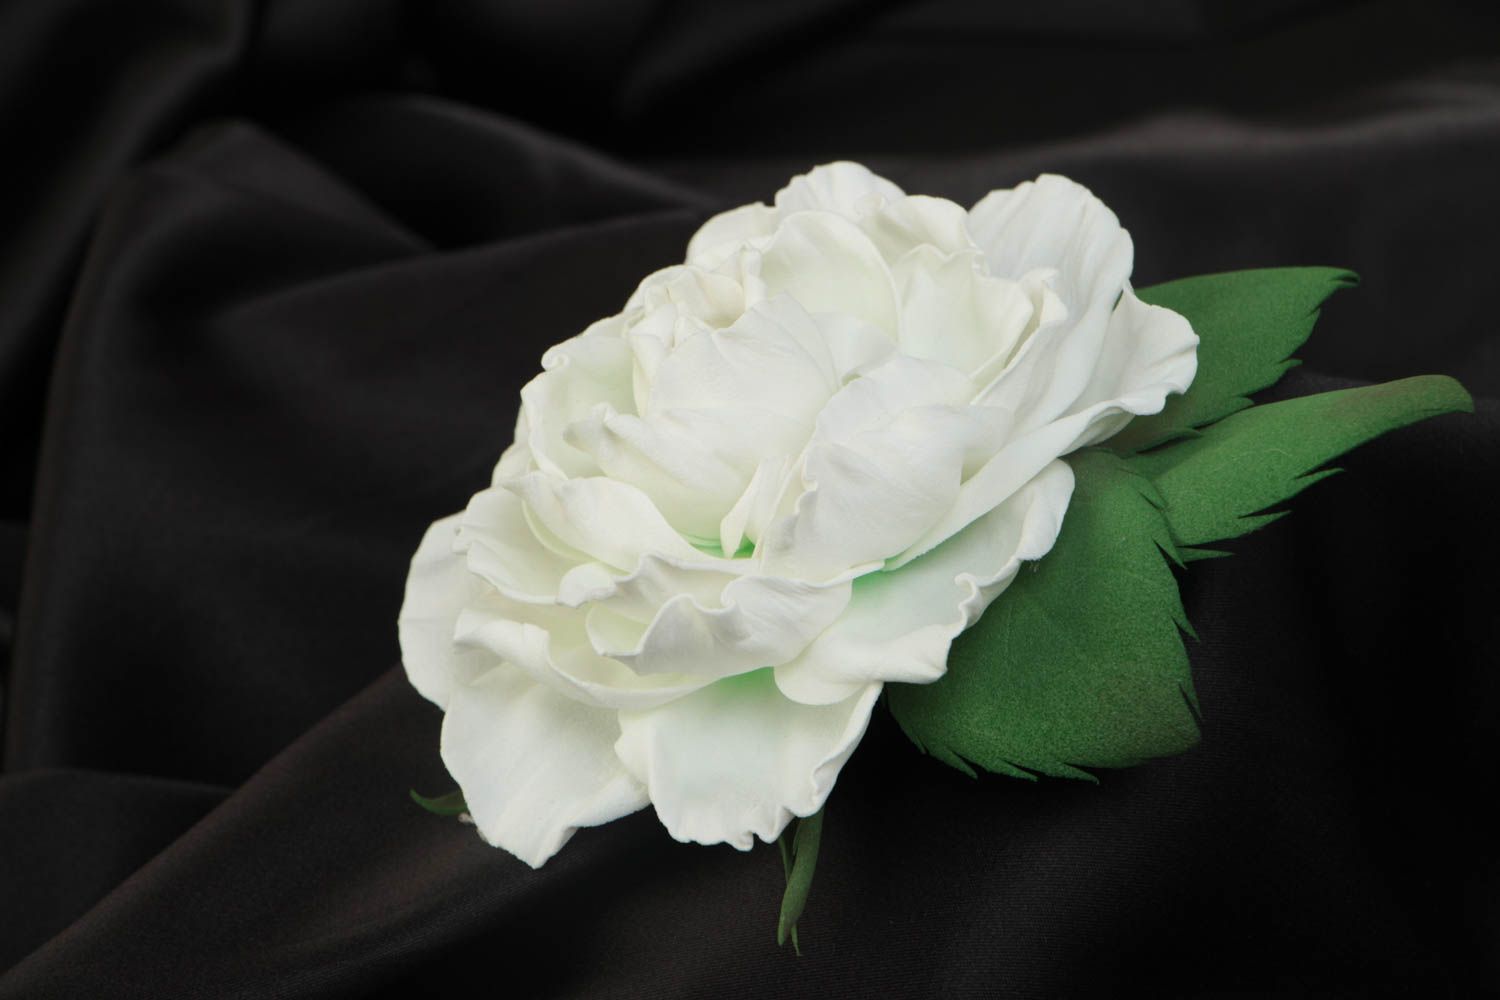 Брошь с цветами из фоамирана белая нежная большая красивая женская ручной работы фото 1